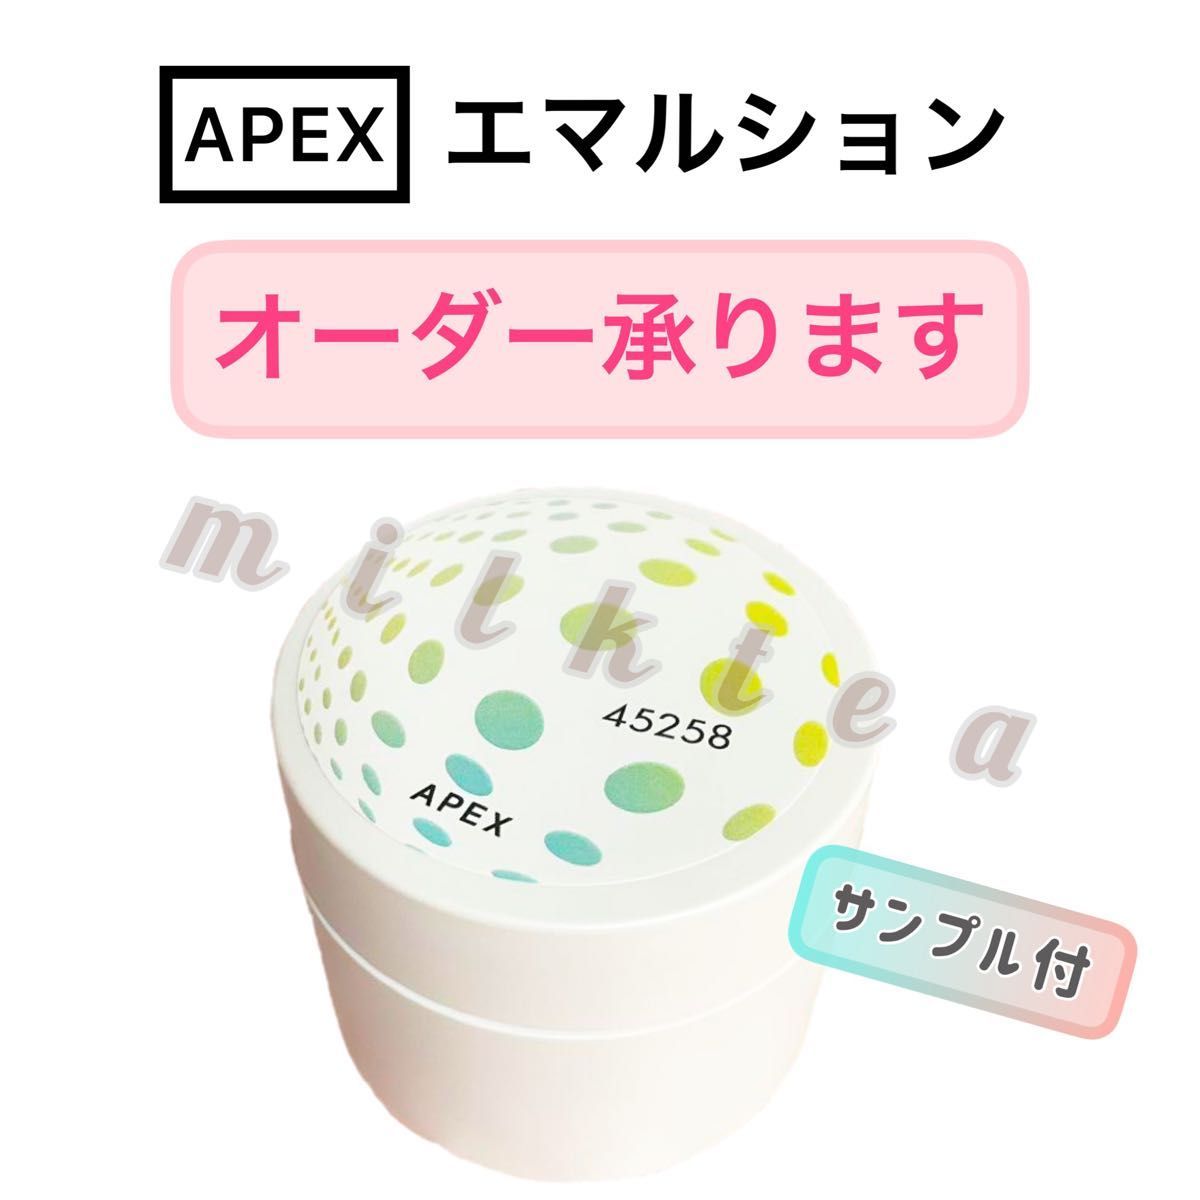 オーダーOK】APEX エマルション 乳液・クリーム POLA ポーラ オーダー